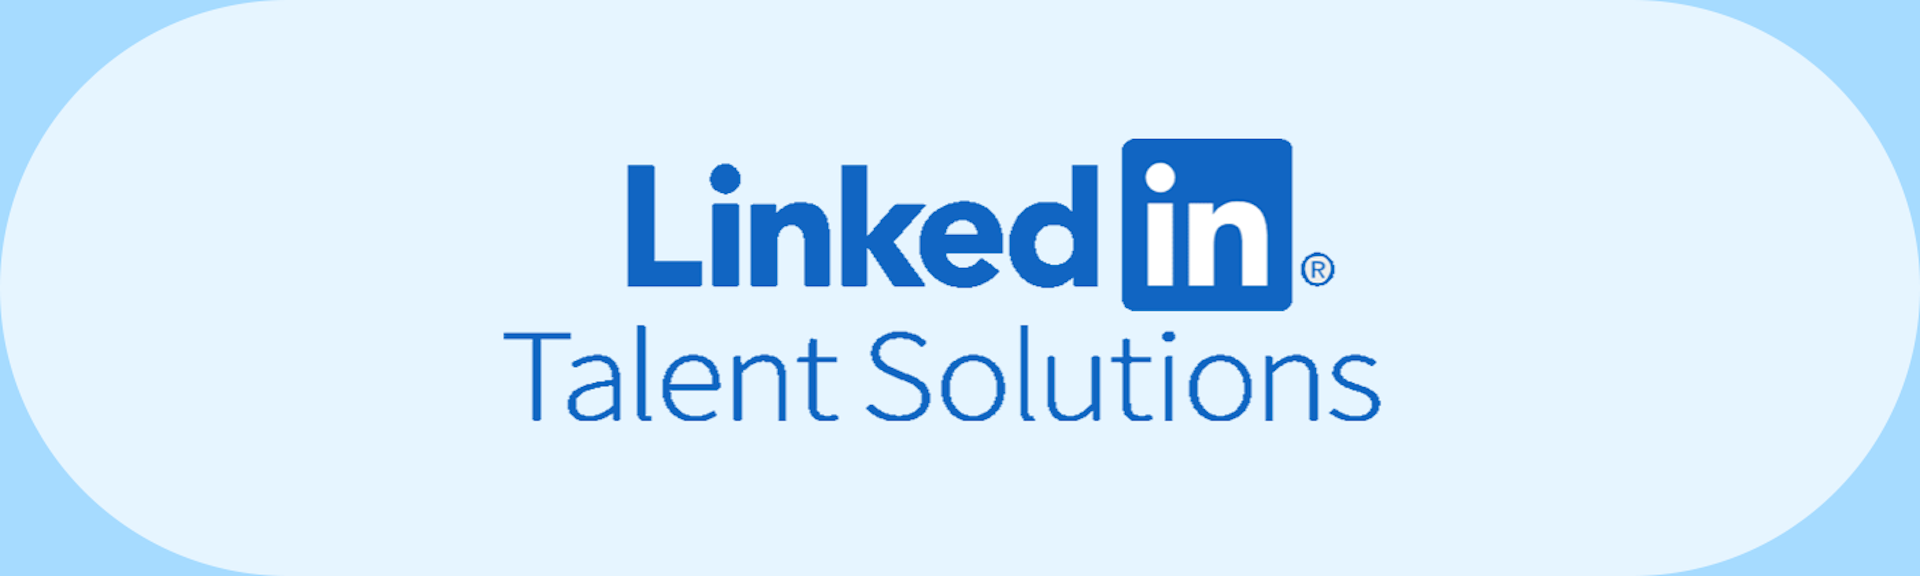 LinkedIn Talent Solutions: los mejores talentos al alcance de unos clics